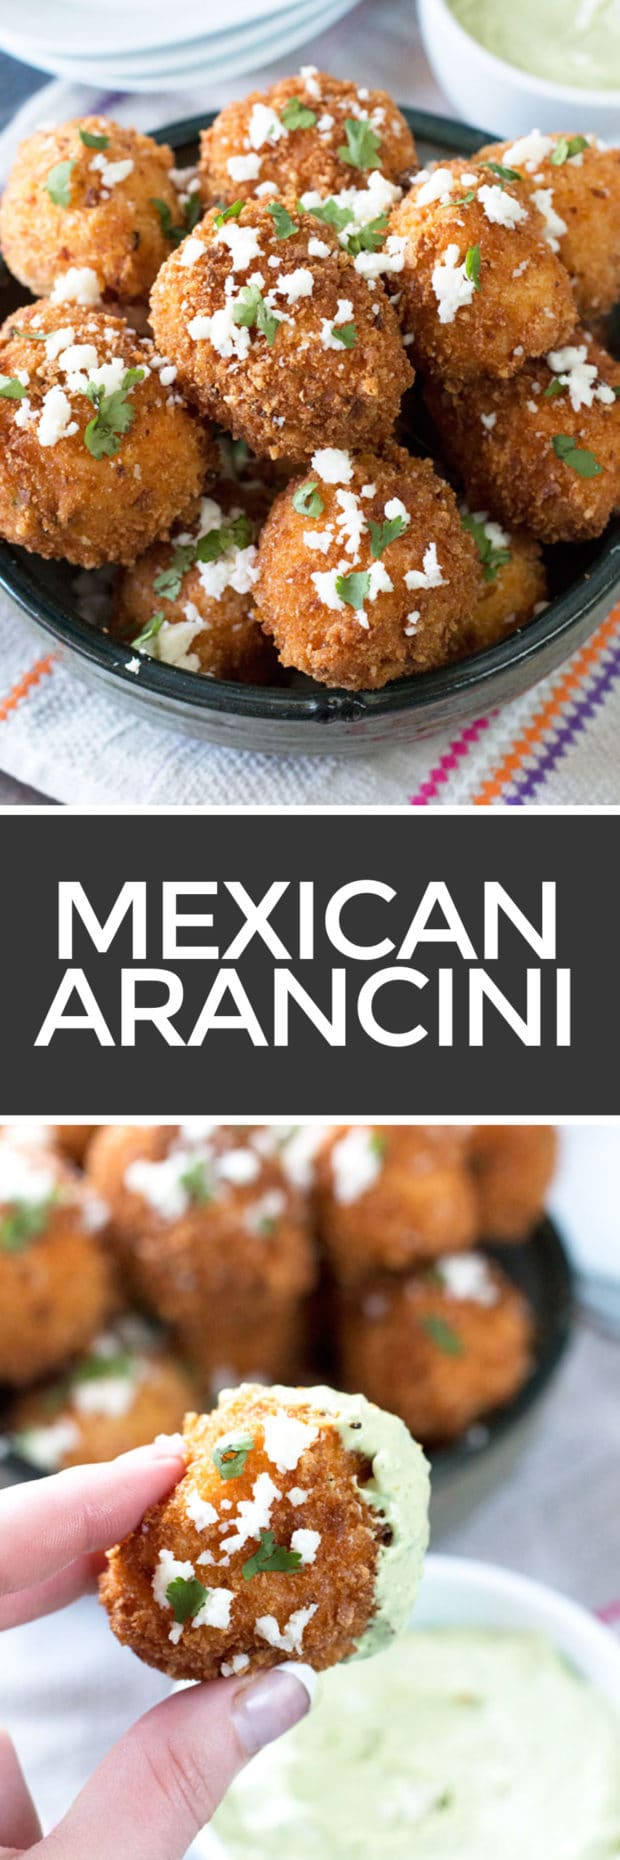 Mexican Arancini with Avocado Cilantro Dipping Sauce | cakenknife.com